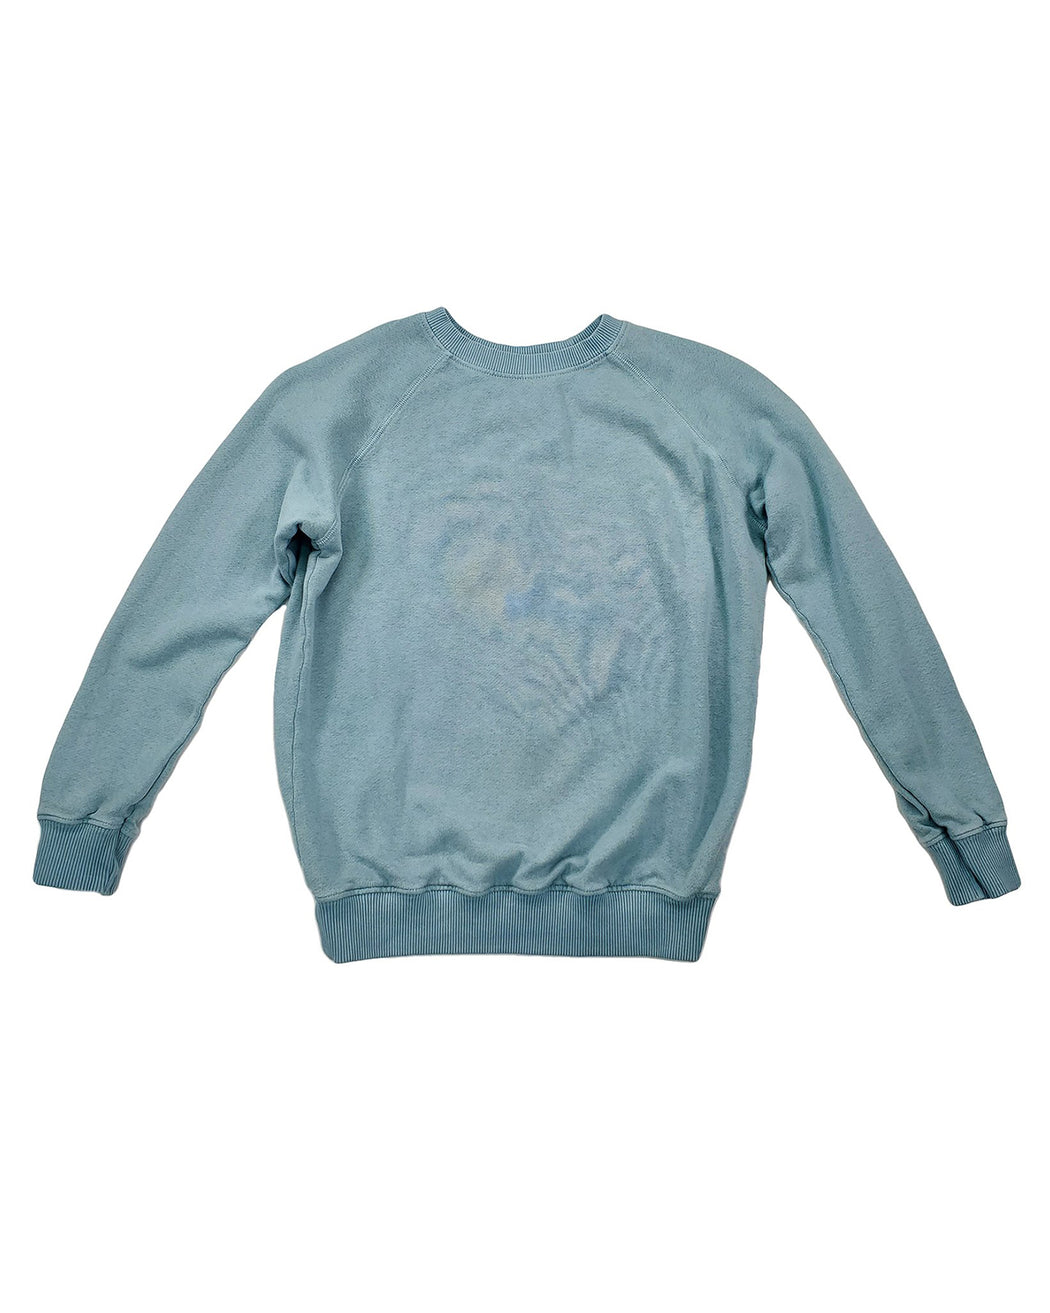 Grom Kid's Sweatshirt – Assorted Colors